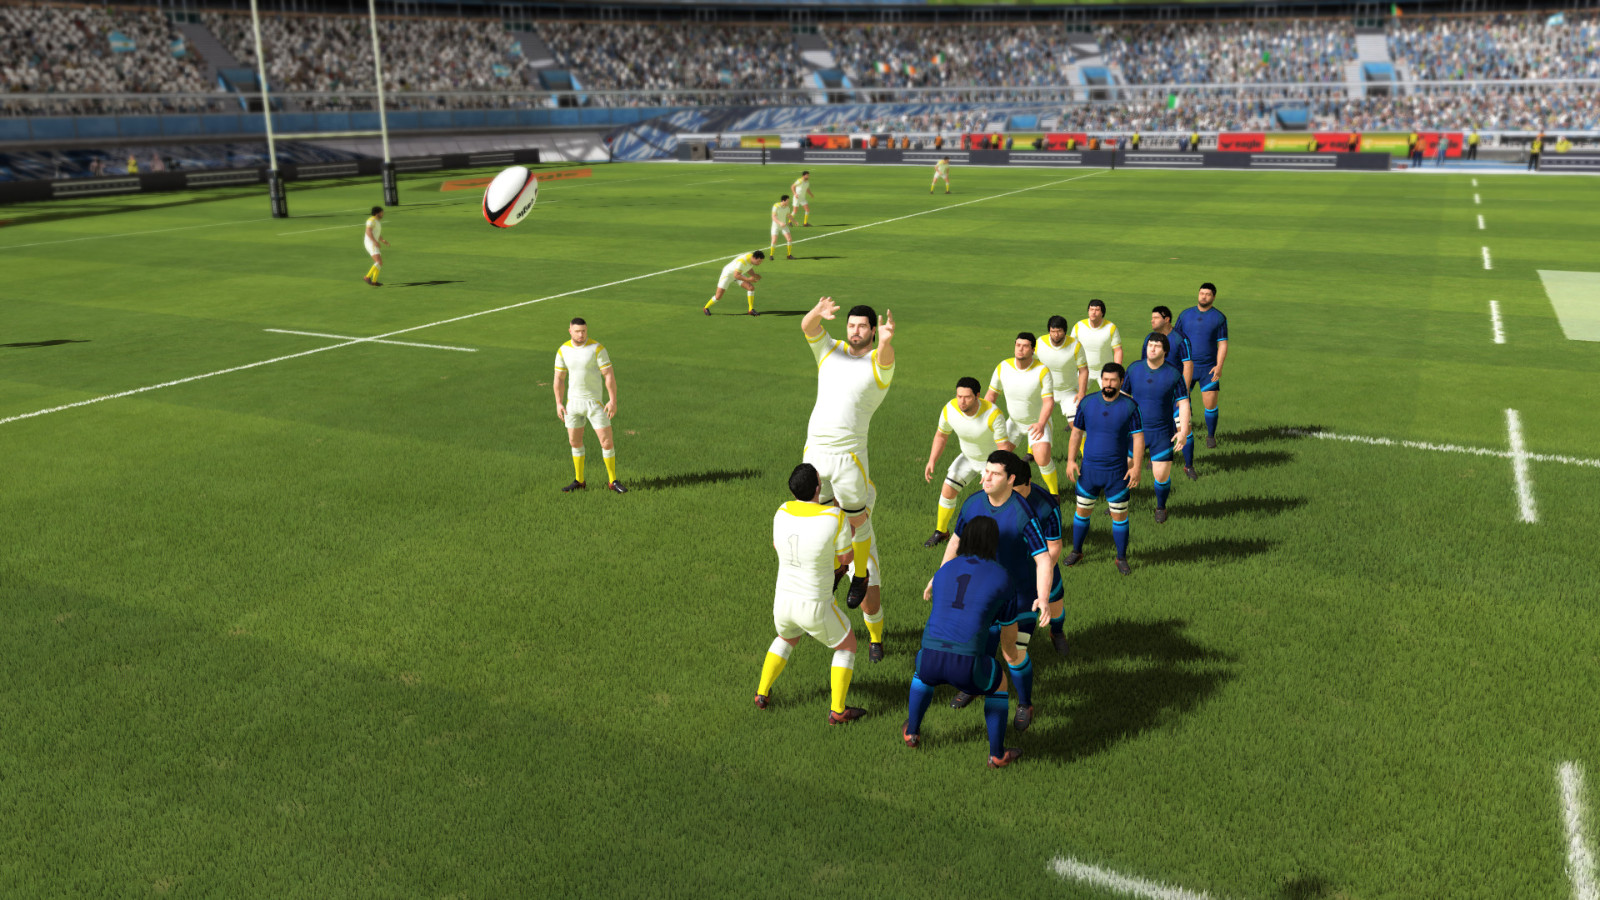 橄榄球模拟游戏《橄榄球22》现已上线。Steam暂时不支持鼠标和键盘操作。